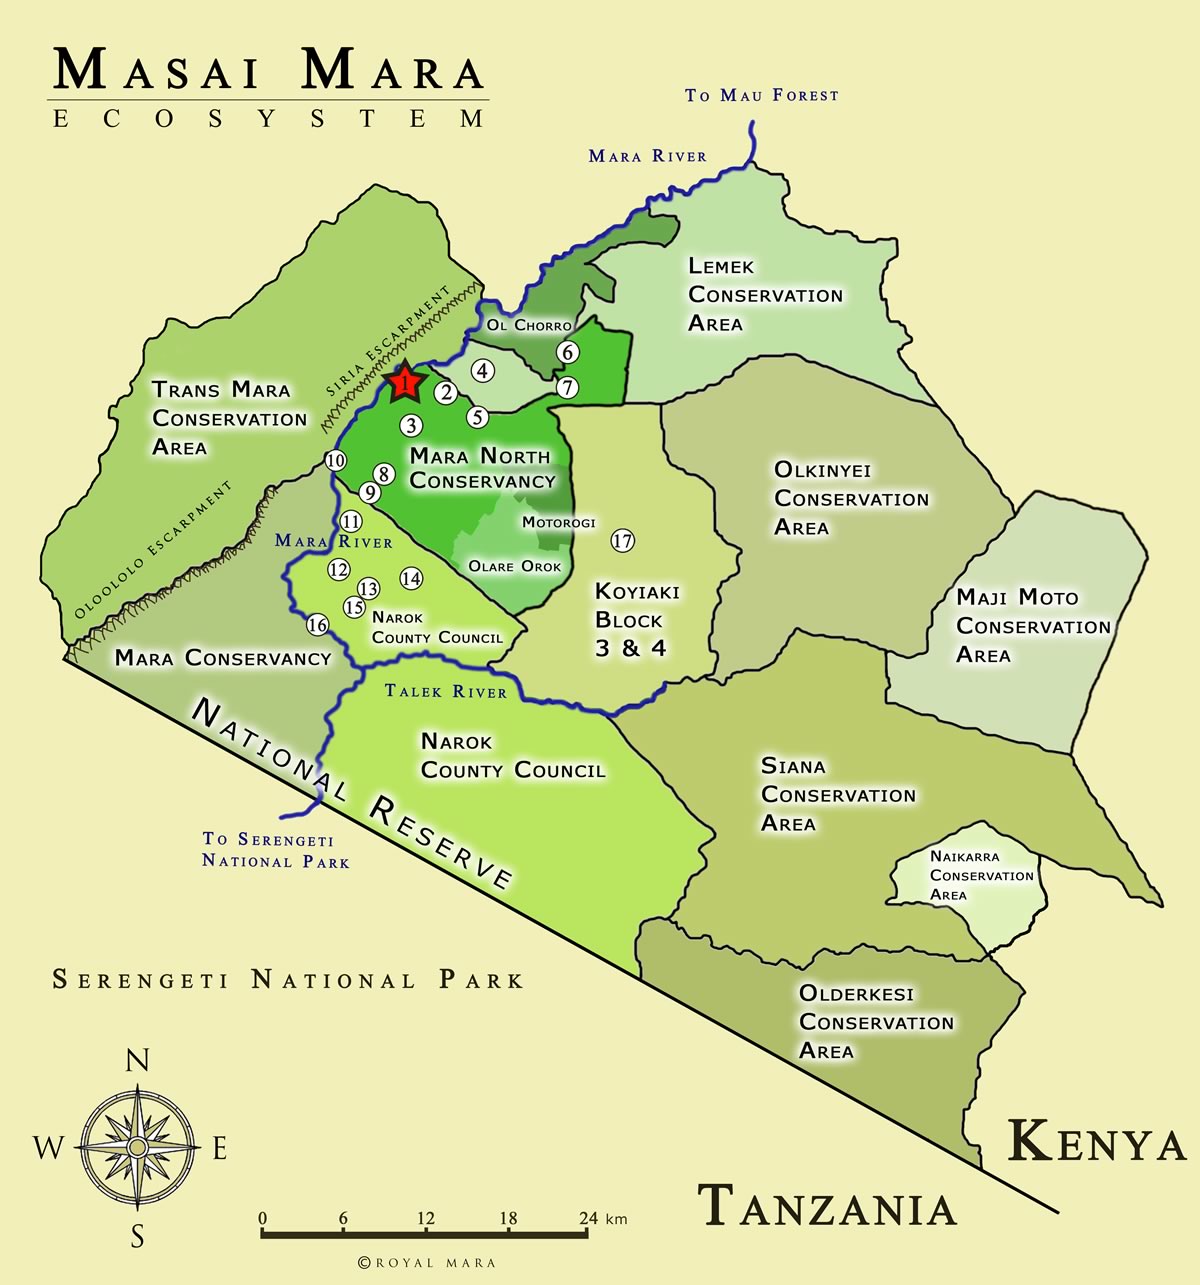 Masai Mara Eco-system